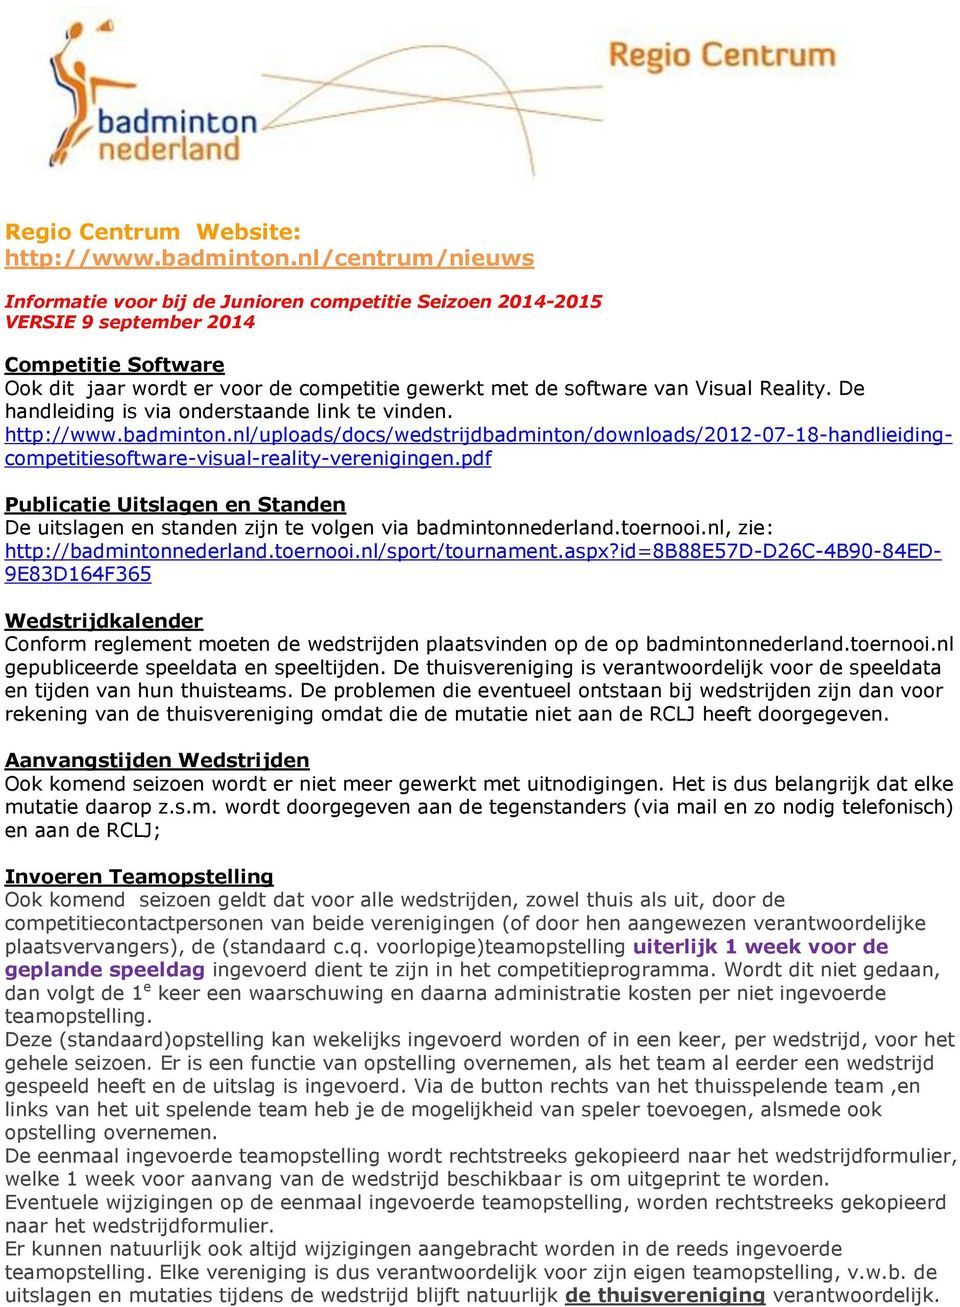 Reality. De handleiding is via onderstaande link te vinden. http://www.badminton.nl/uploads/docs/wedstrijdbadminton/downloads/2012-07-18-handlieidingcompetitiesoftware-visual-reality-verenigingen.